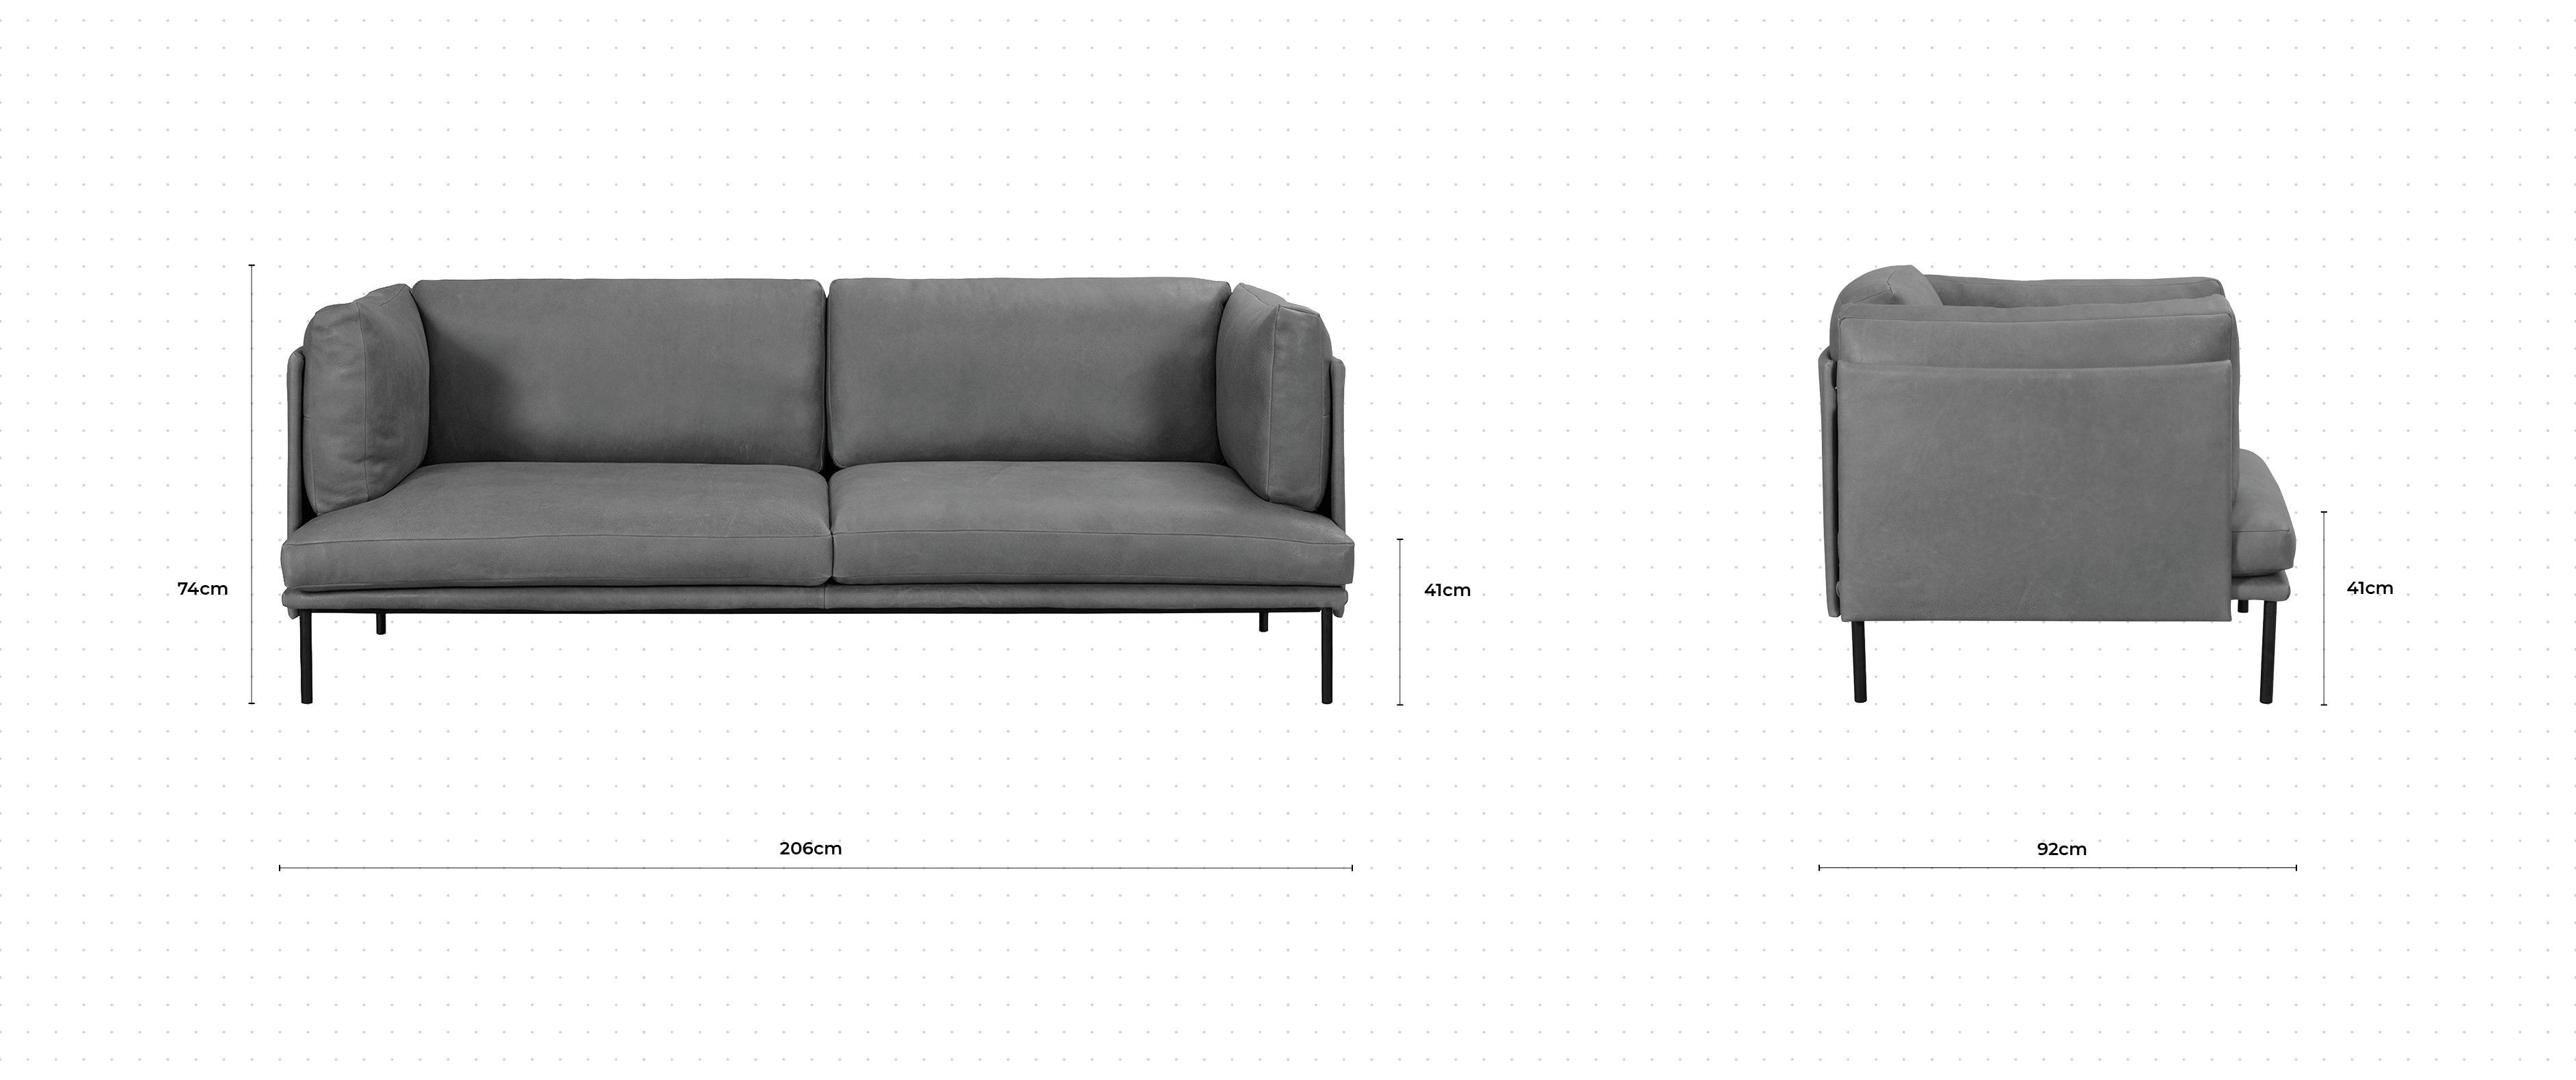 Brioche 2 Seater Sofa dimensions